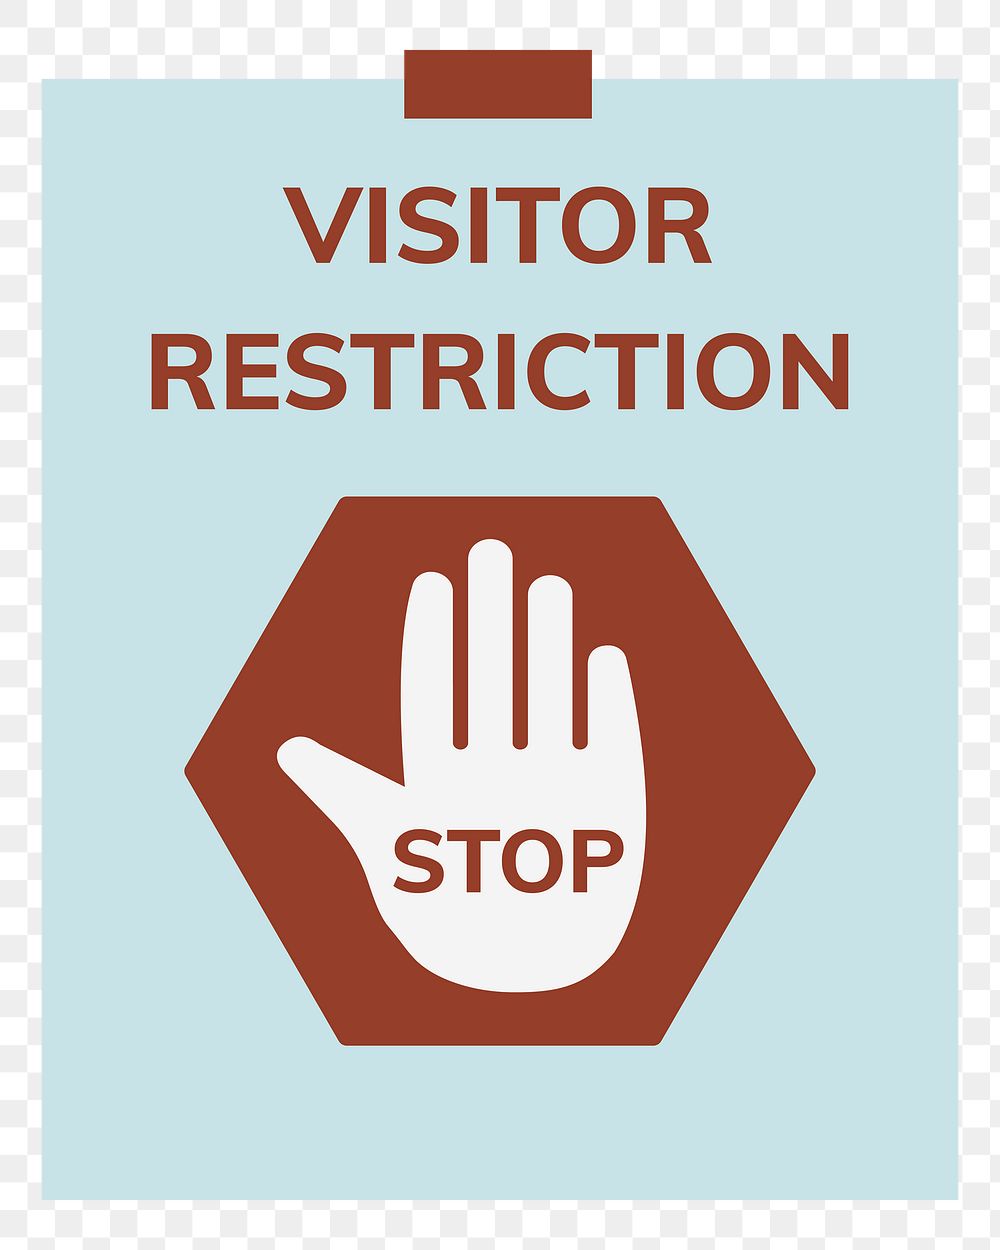 Visitor restriction sign png illustration sticker, transparent background